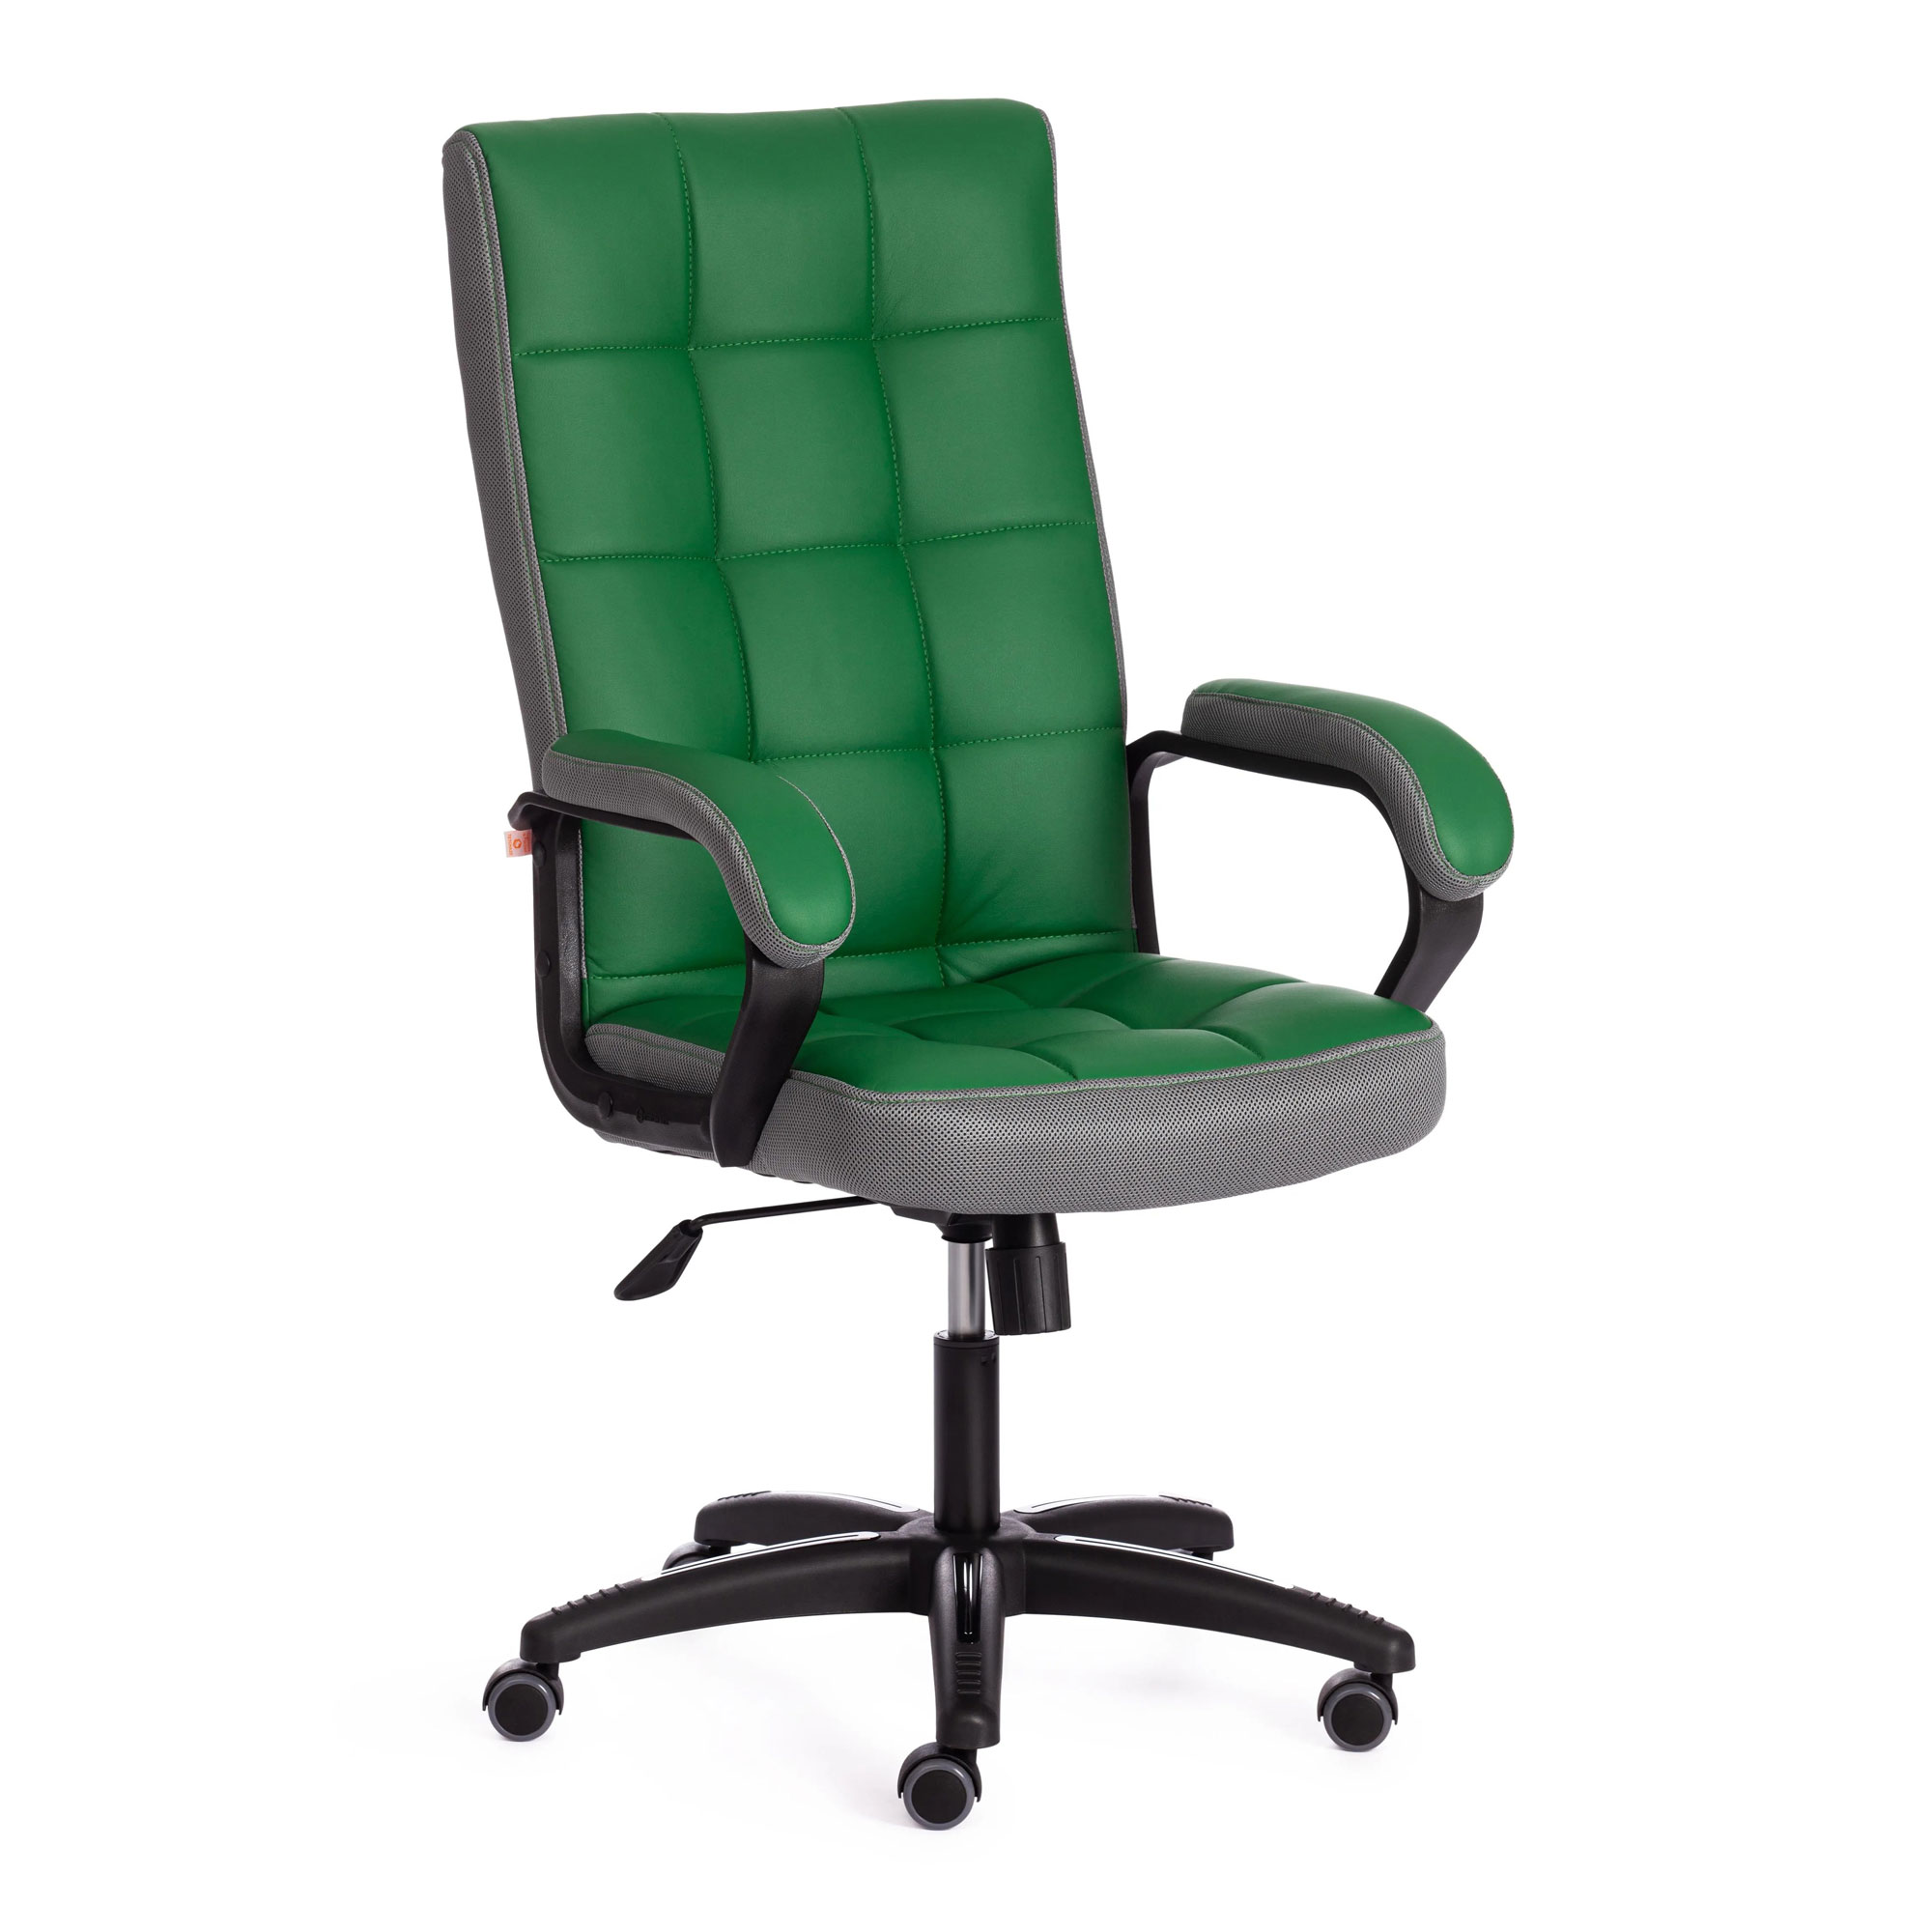 Кресло компьютерное TC искусственная кожа зелёное с серым 61х47х126 см кресло компьютерное tc neo искусственная кожа бежевое 64х49х122 см